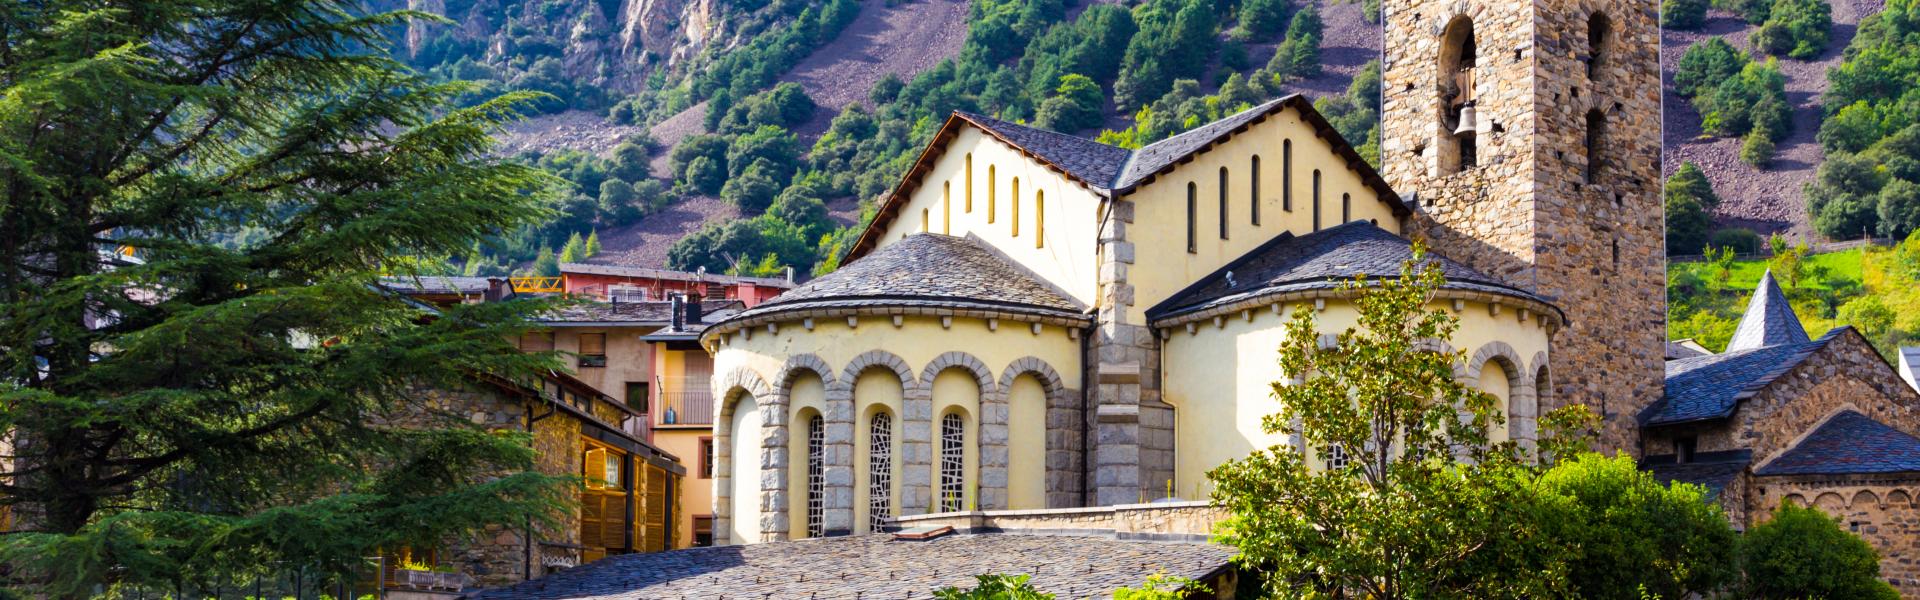  Appartamento vacanza Andorra la Vella – una meraviglia nascosta - Casamundo